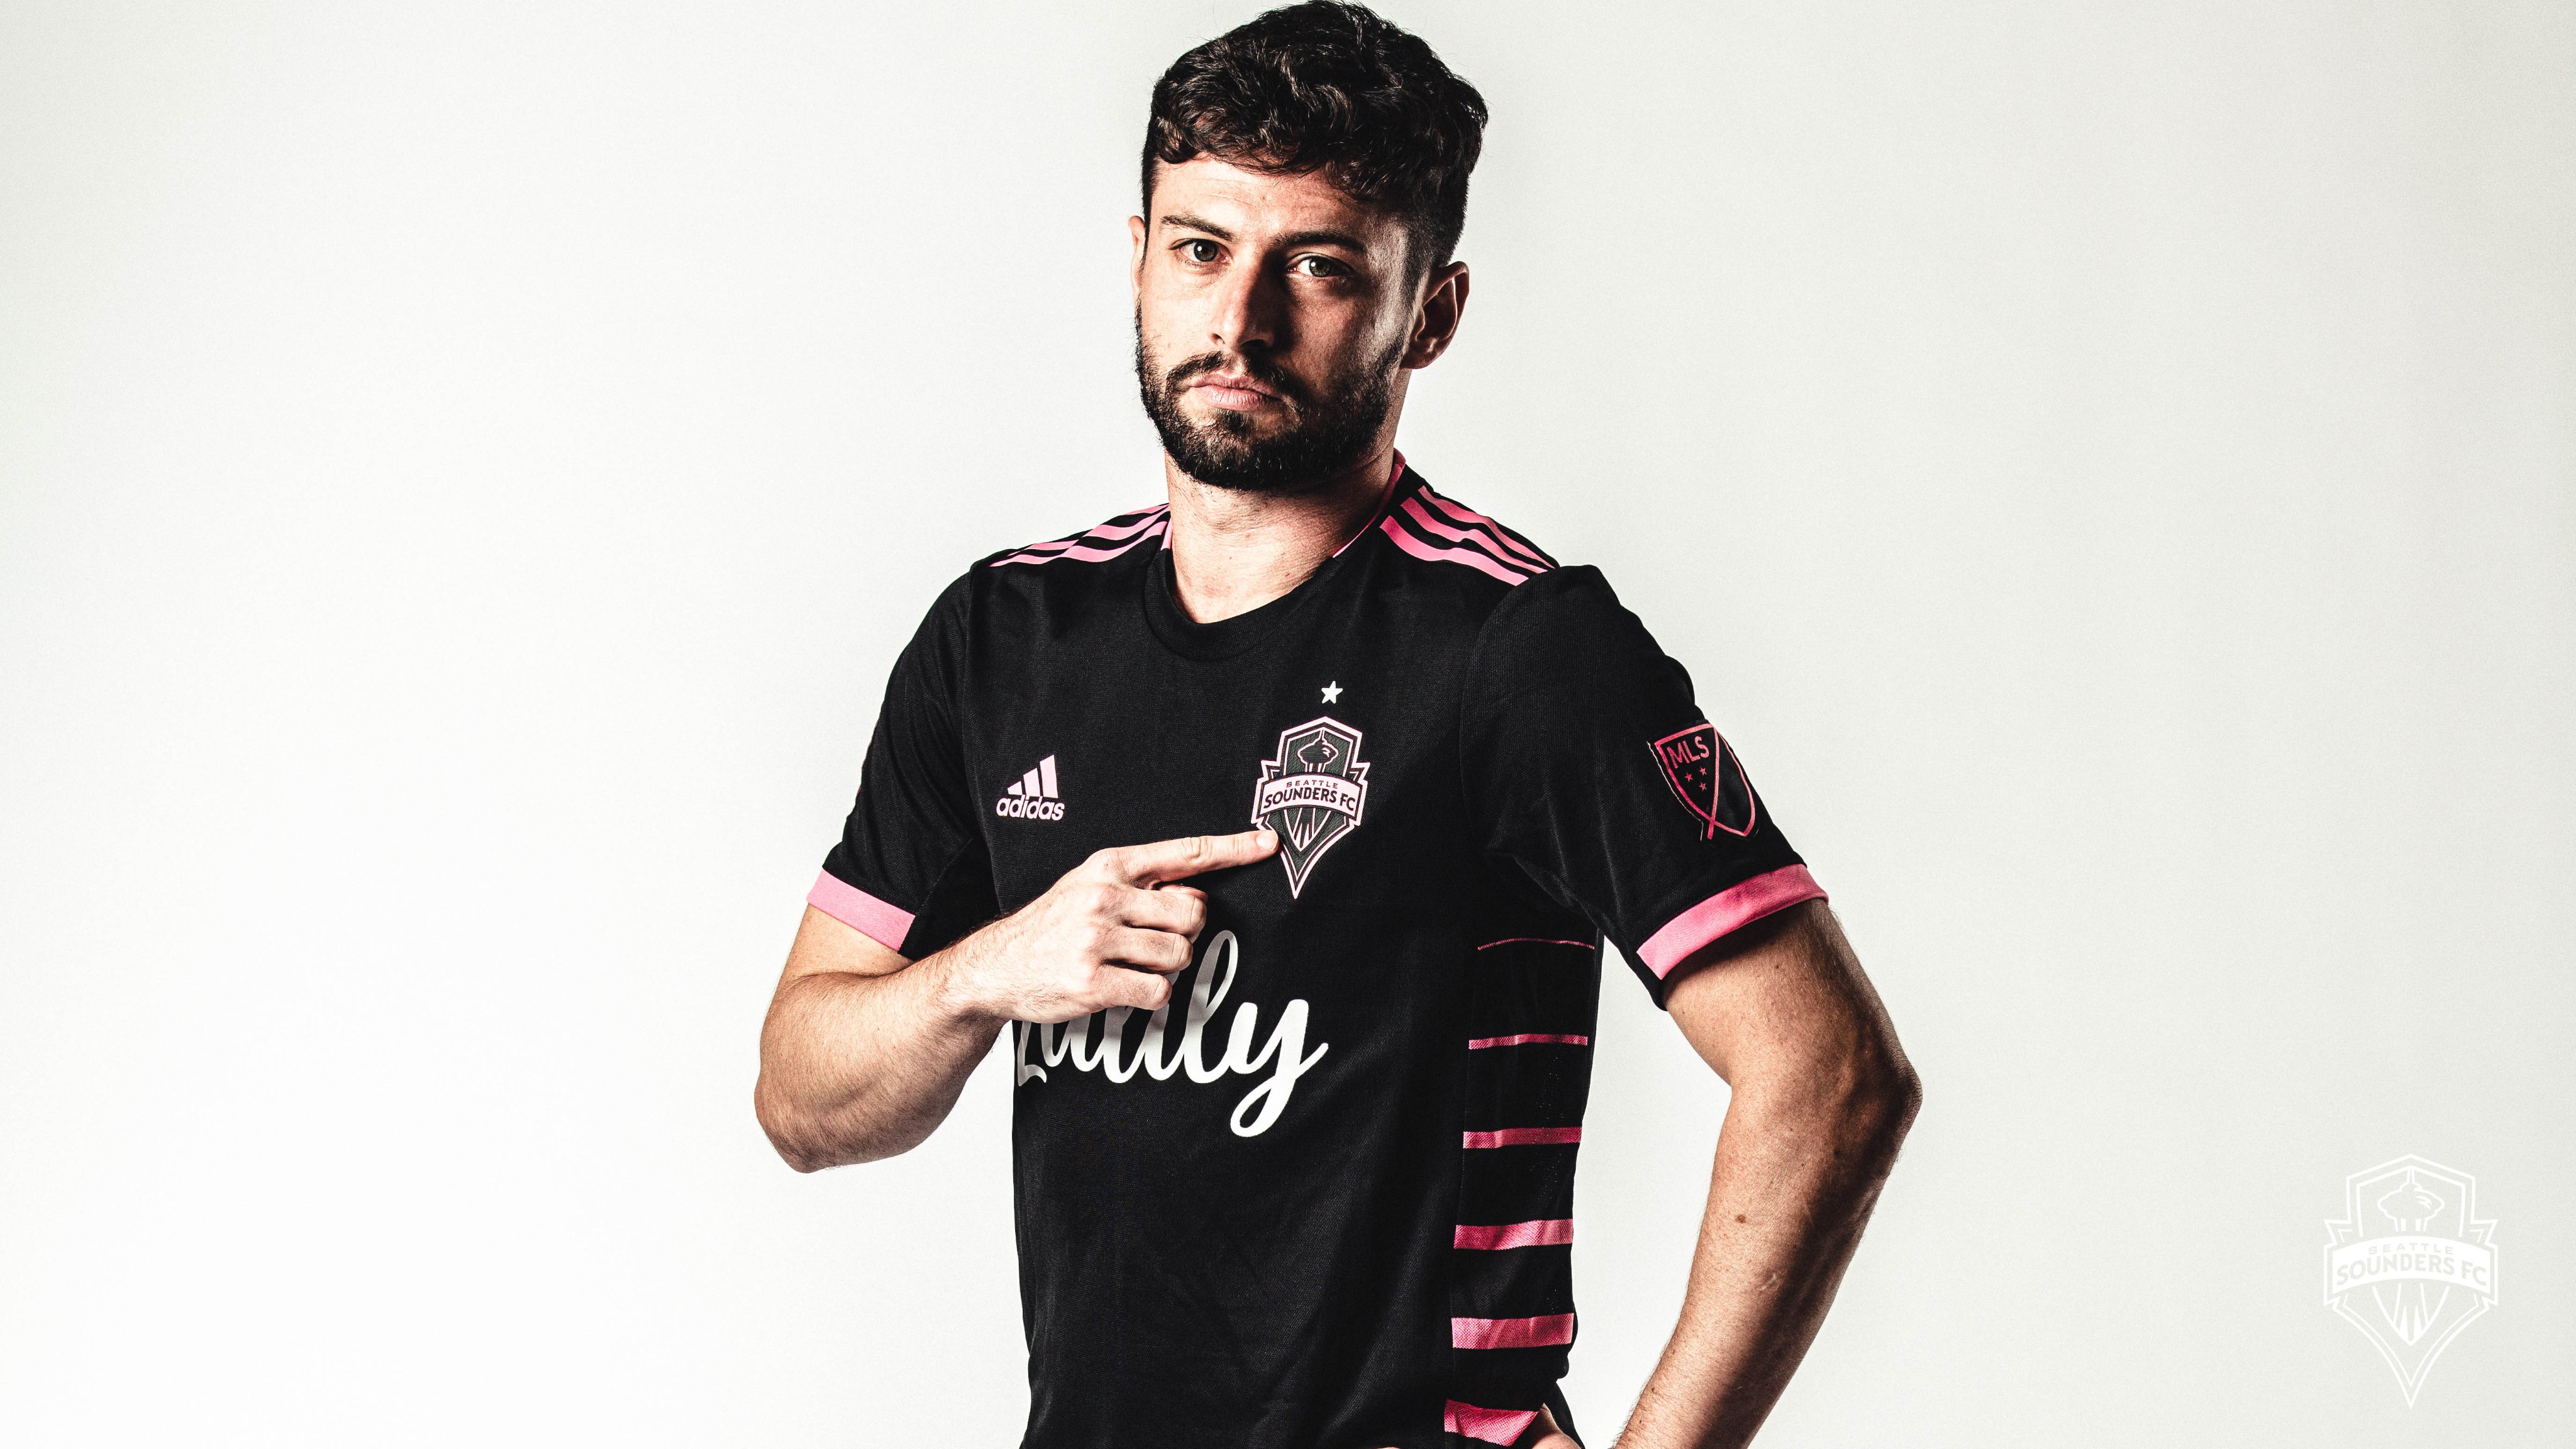 João Paulo - brasileiro (meia do Seattle Sounders) - Contrato com o clube da MLS até junho de 2023 - Valor de mercado: 2,5 milhões de euros (R$ 13,1 milhões)